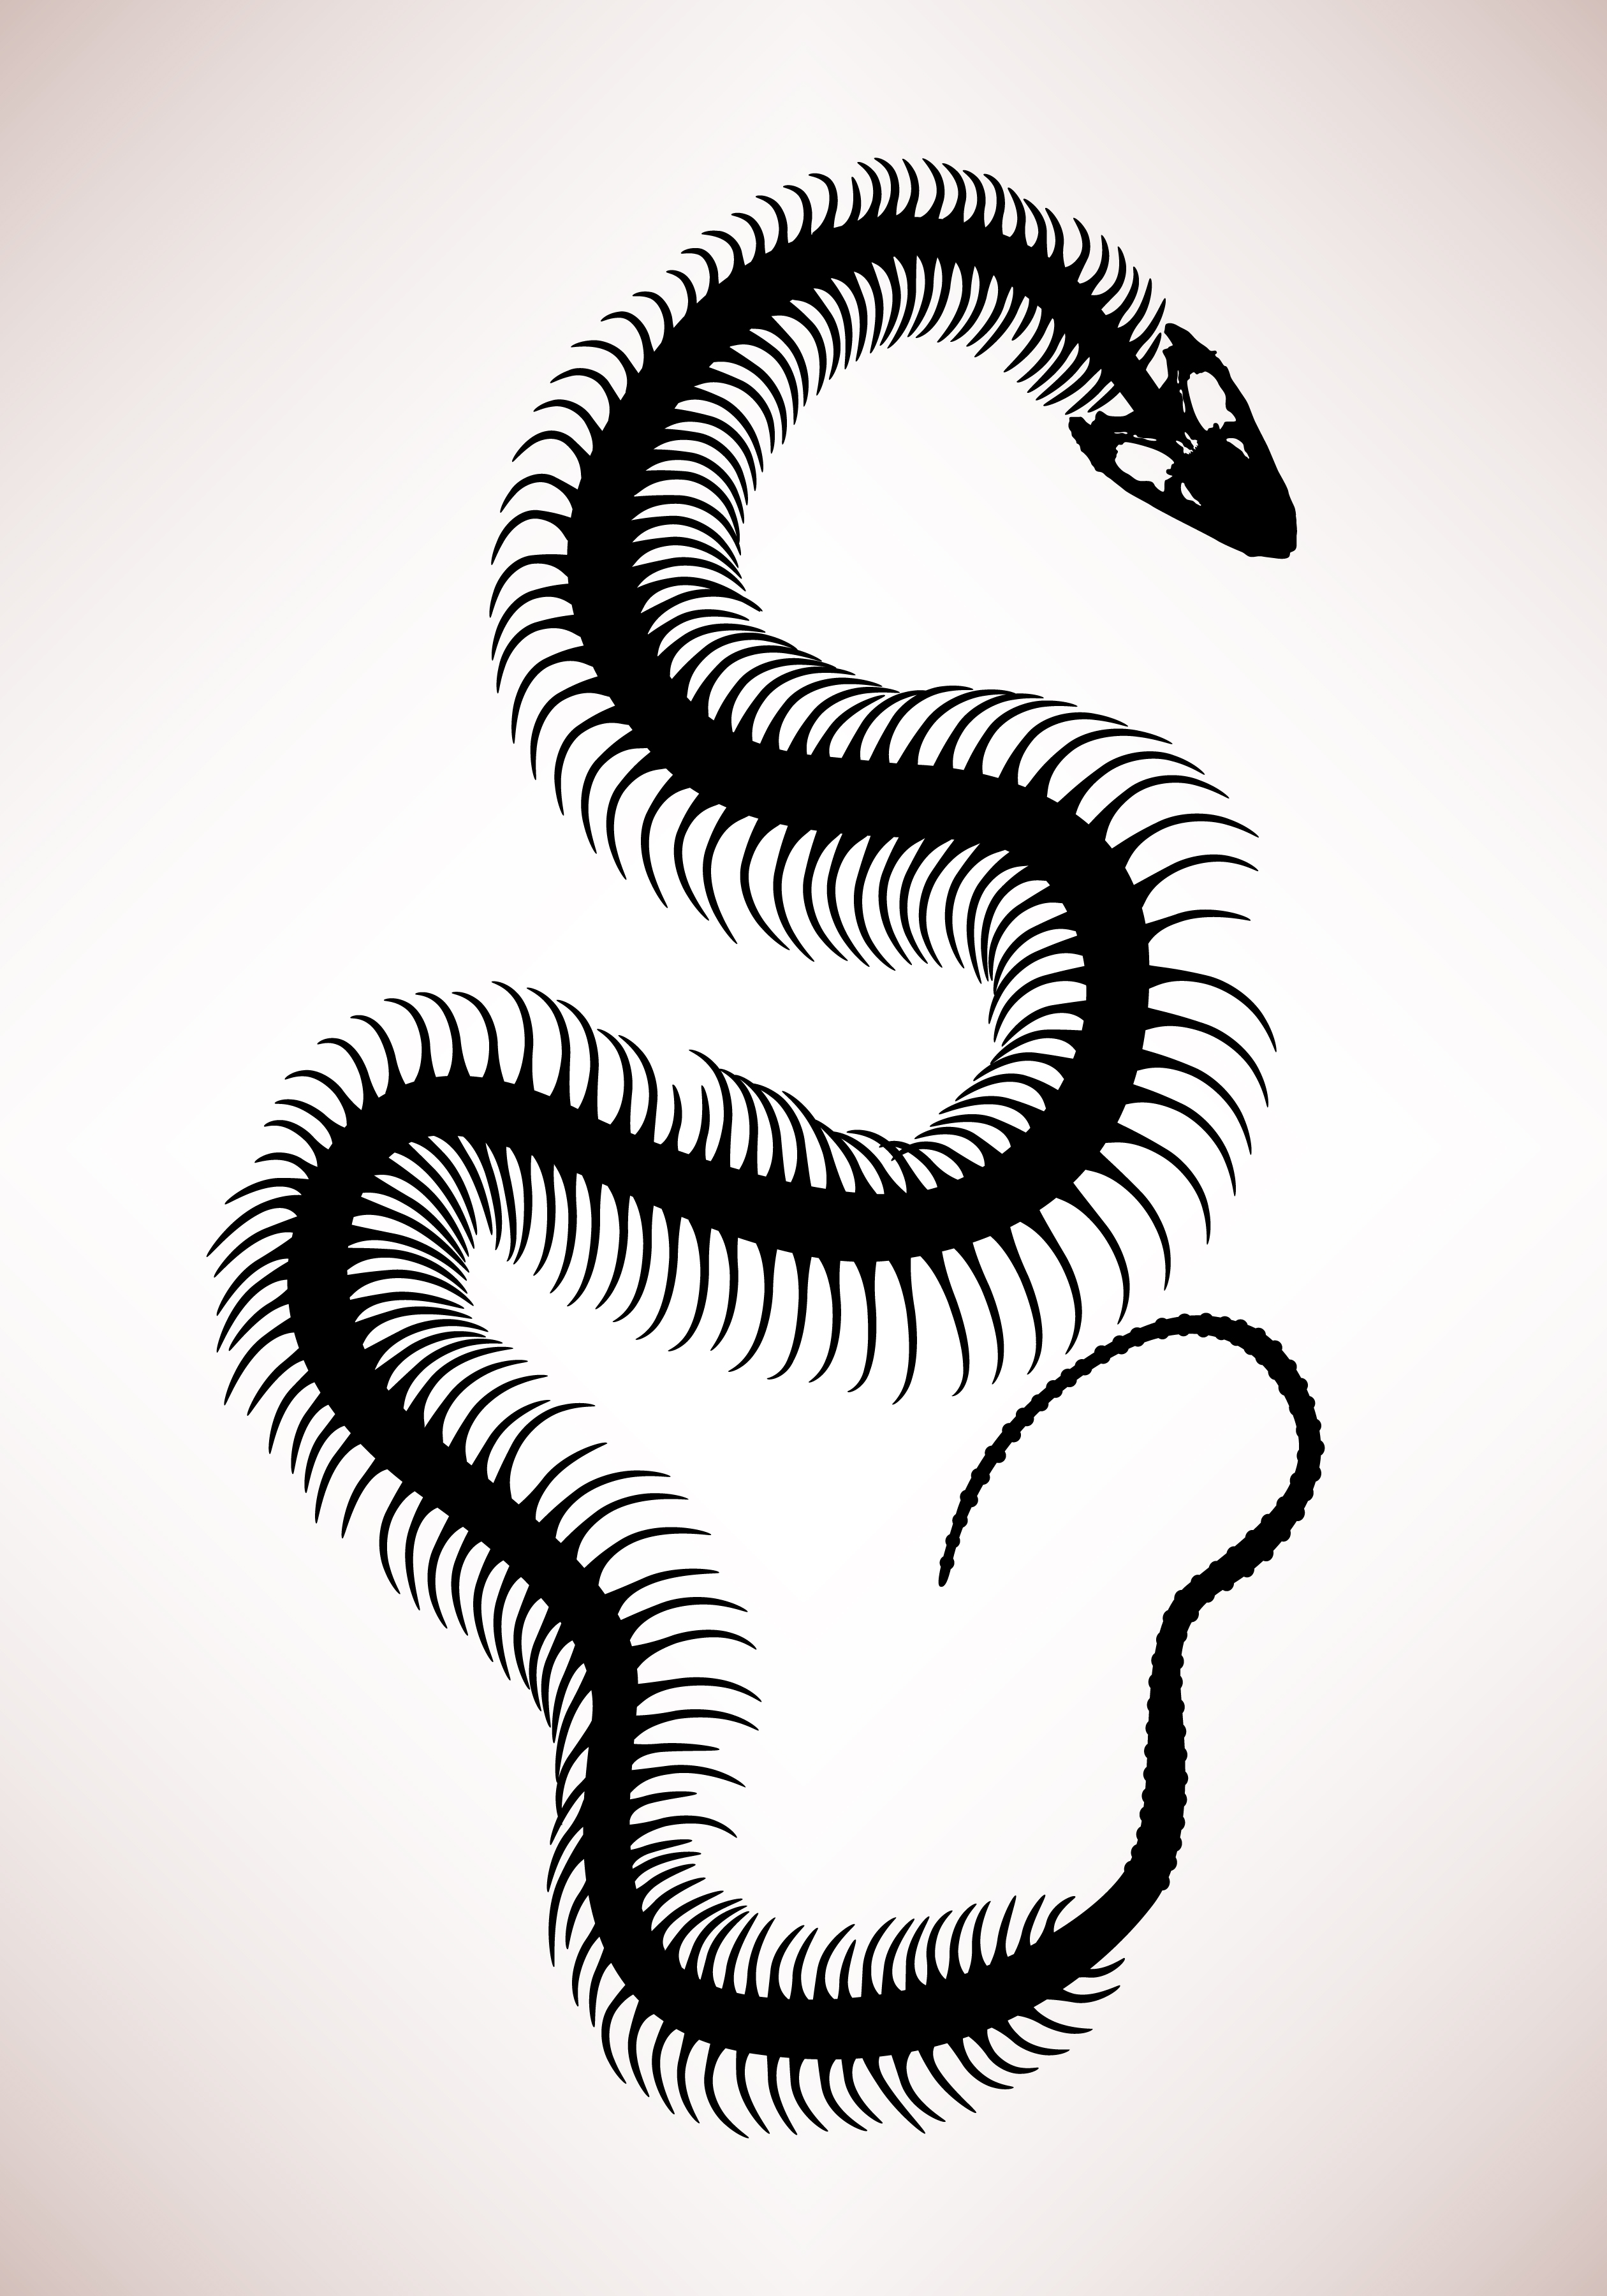 Snake Bone Skeleton. 342168 Vector Art at Vecteezy